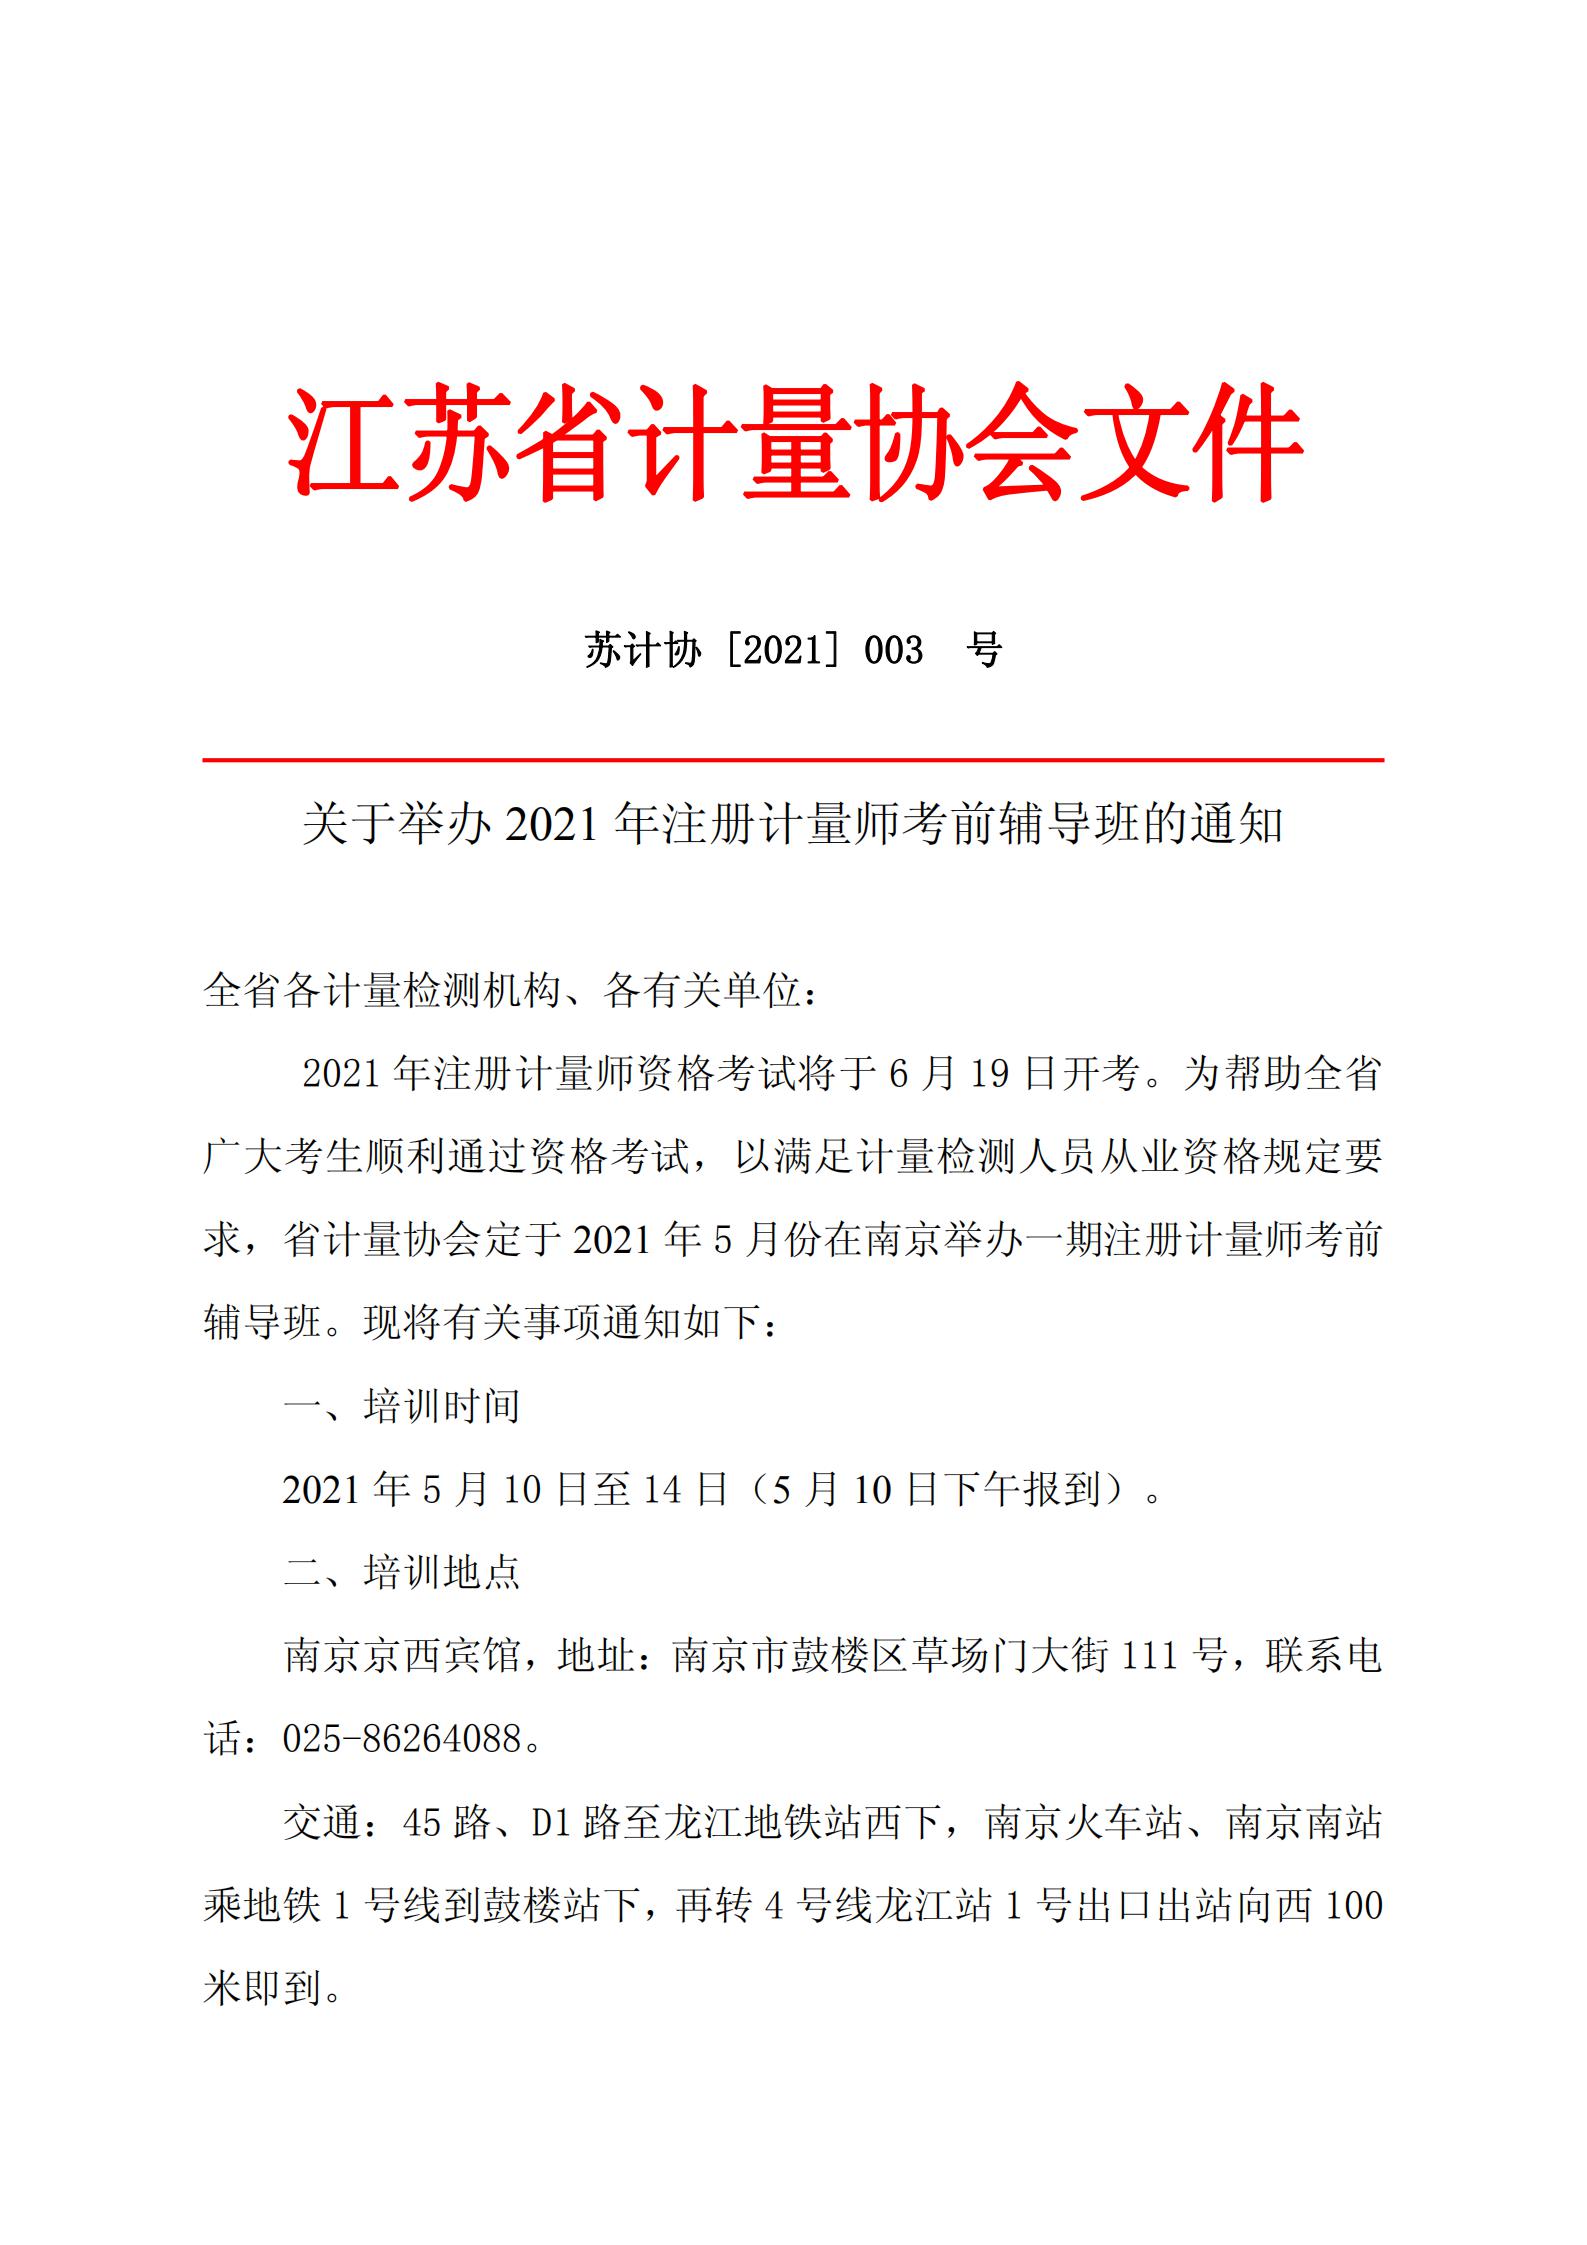 注册计量师考前辅导班的通知南京2021.3.15_00.jpg